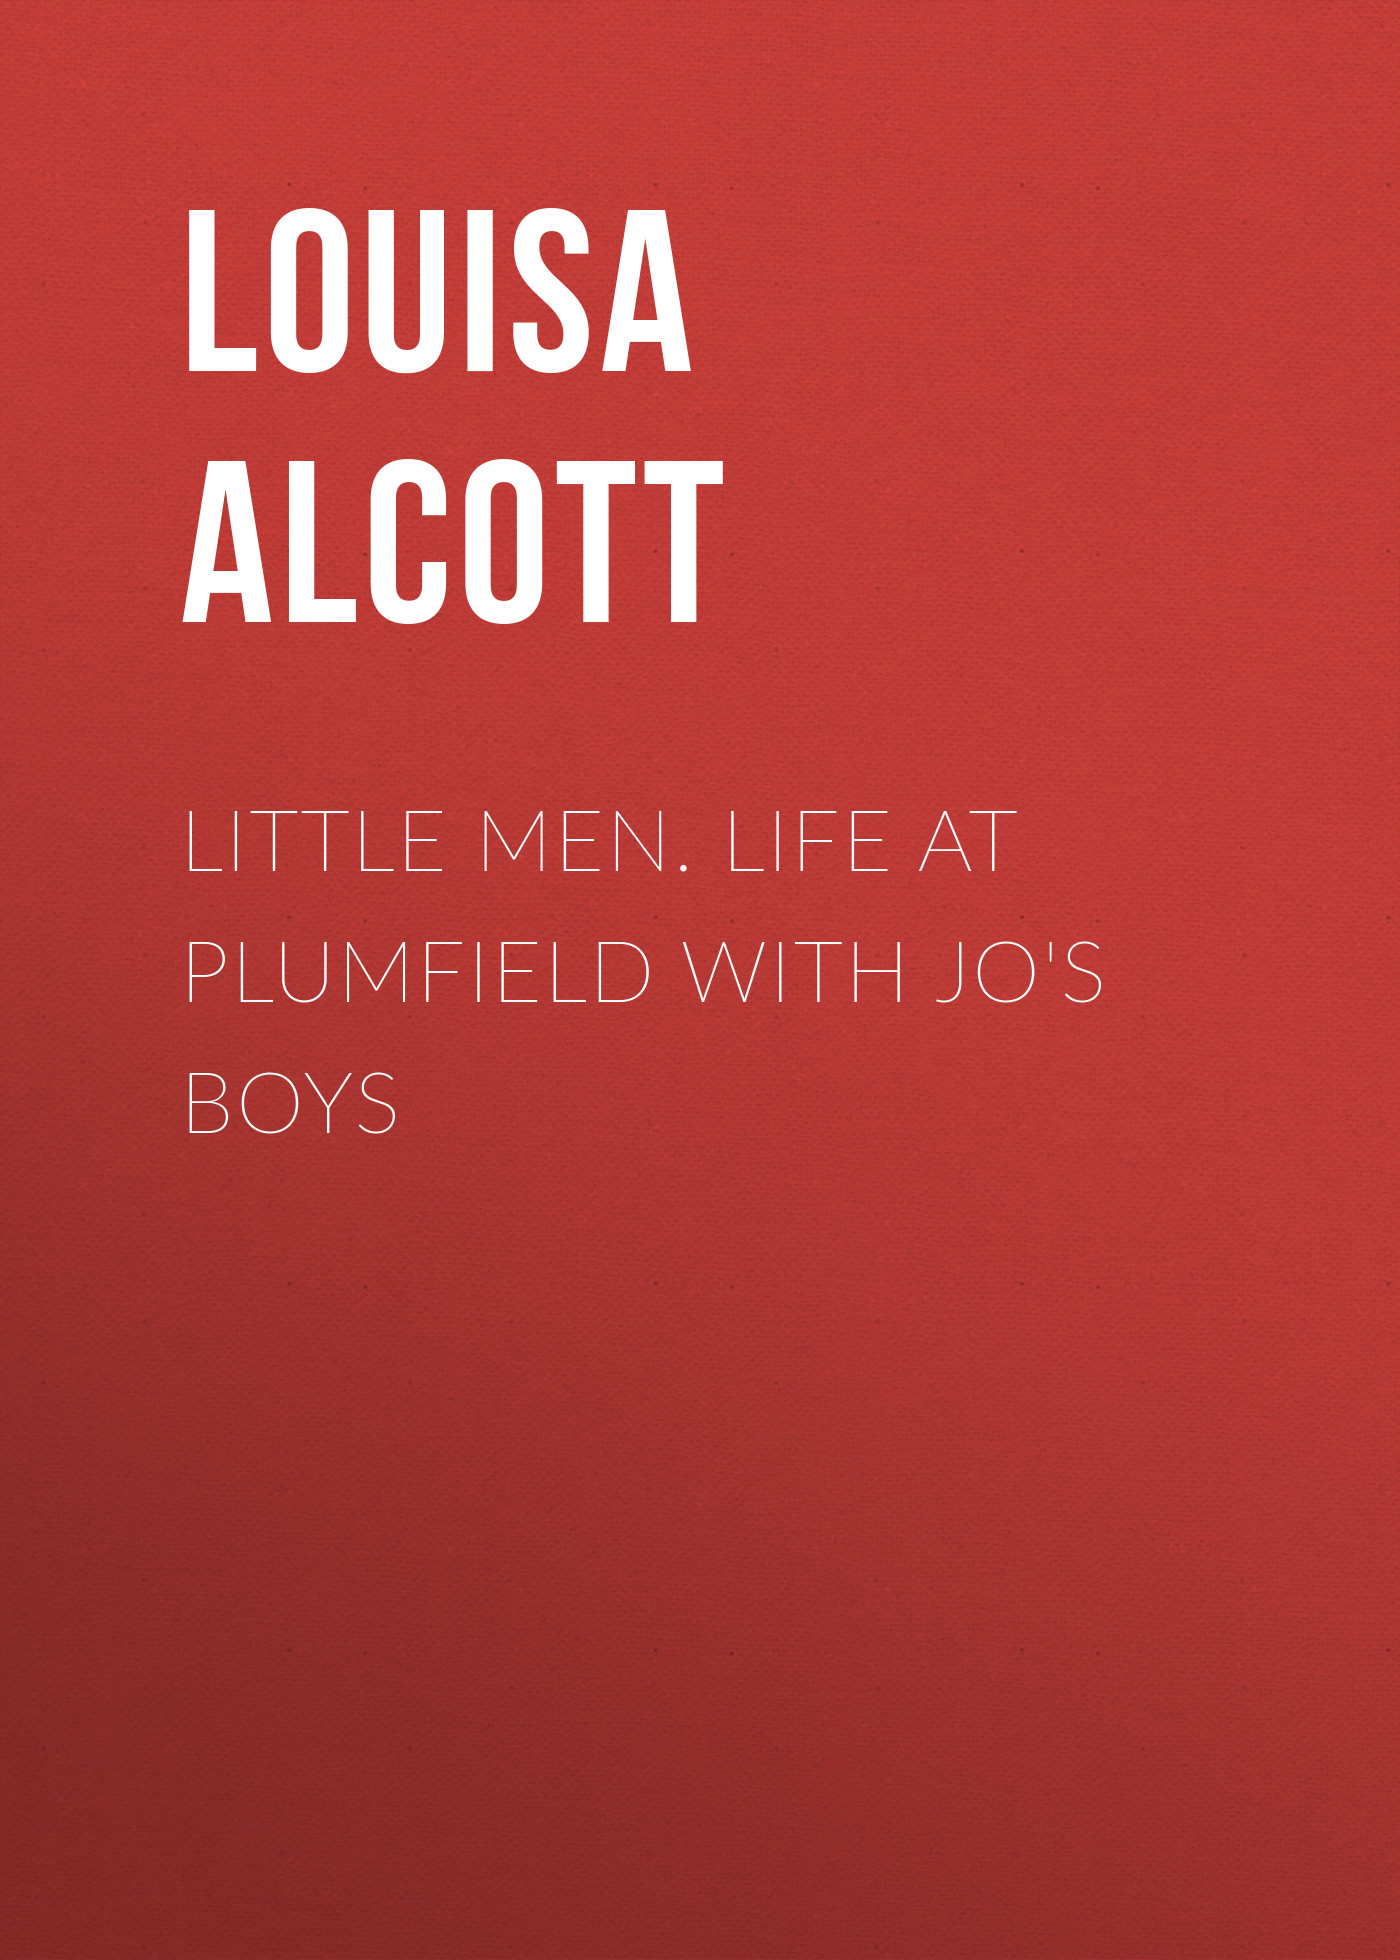 Книга Little Men. Life at Plumfield with Jo's Boys из серии , созданная Louisa Alcott, может относится к жанру Иностранные языки, Зарубежная классика. Стоимость электронной книги Little Men. Life at Plumfield with Jo's Boys с идентификатором 23159627 составляет 5.99 руб.